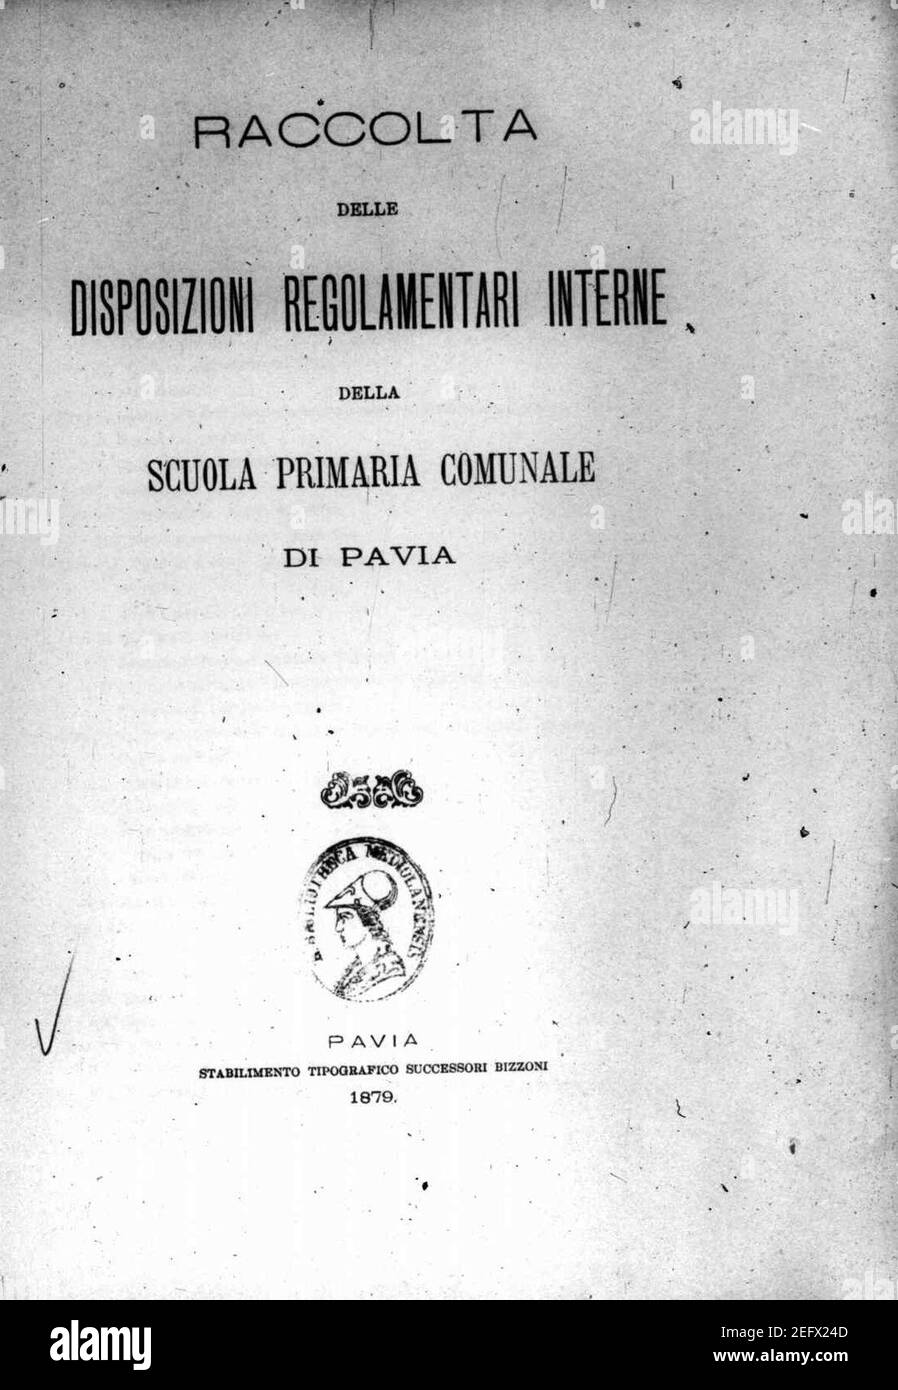 Oppizzi, Giovanni – Raccolta delle disposizioni regolari interne della scuola primaria comunale di Pavia, 1879 – BEIC 15120454. Foto Stock